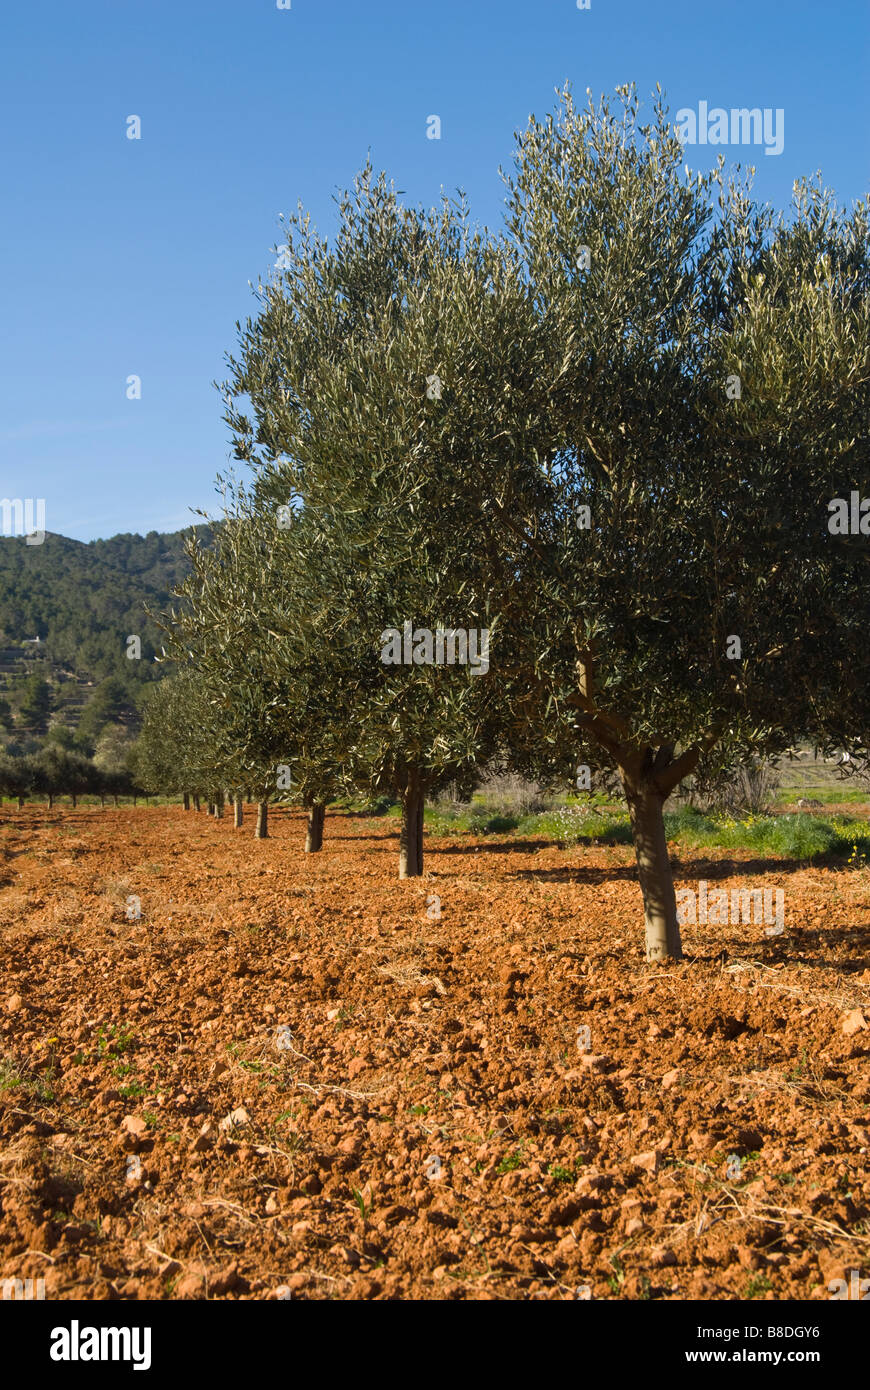 Olive tree plantation at San Mateo, Ibiza, Spain Stock Photo